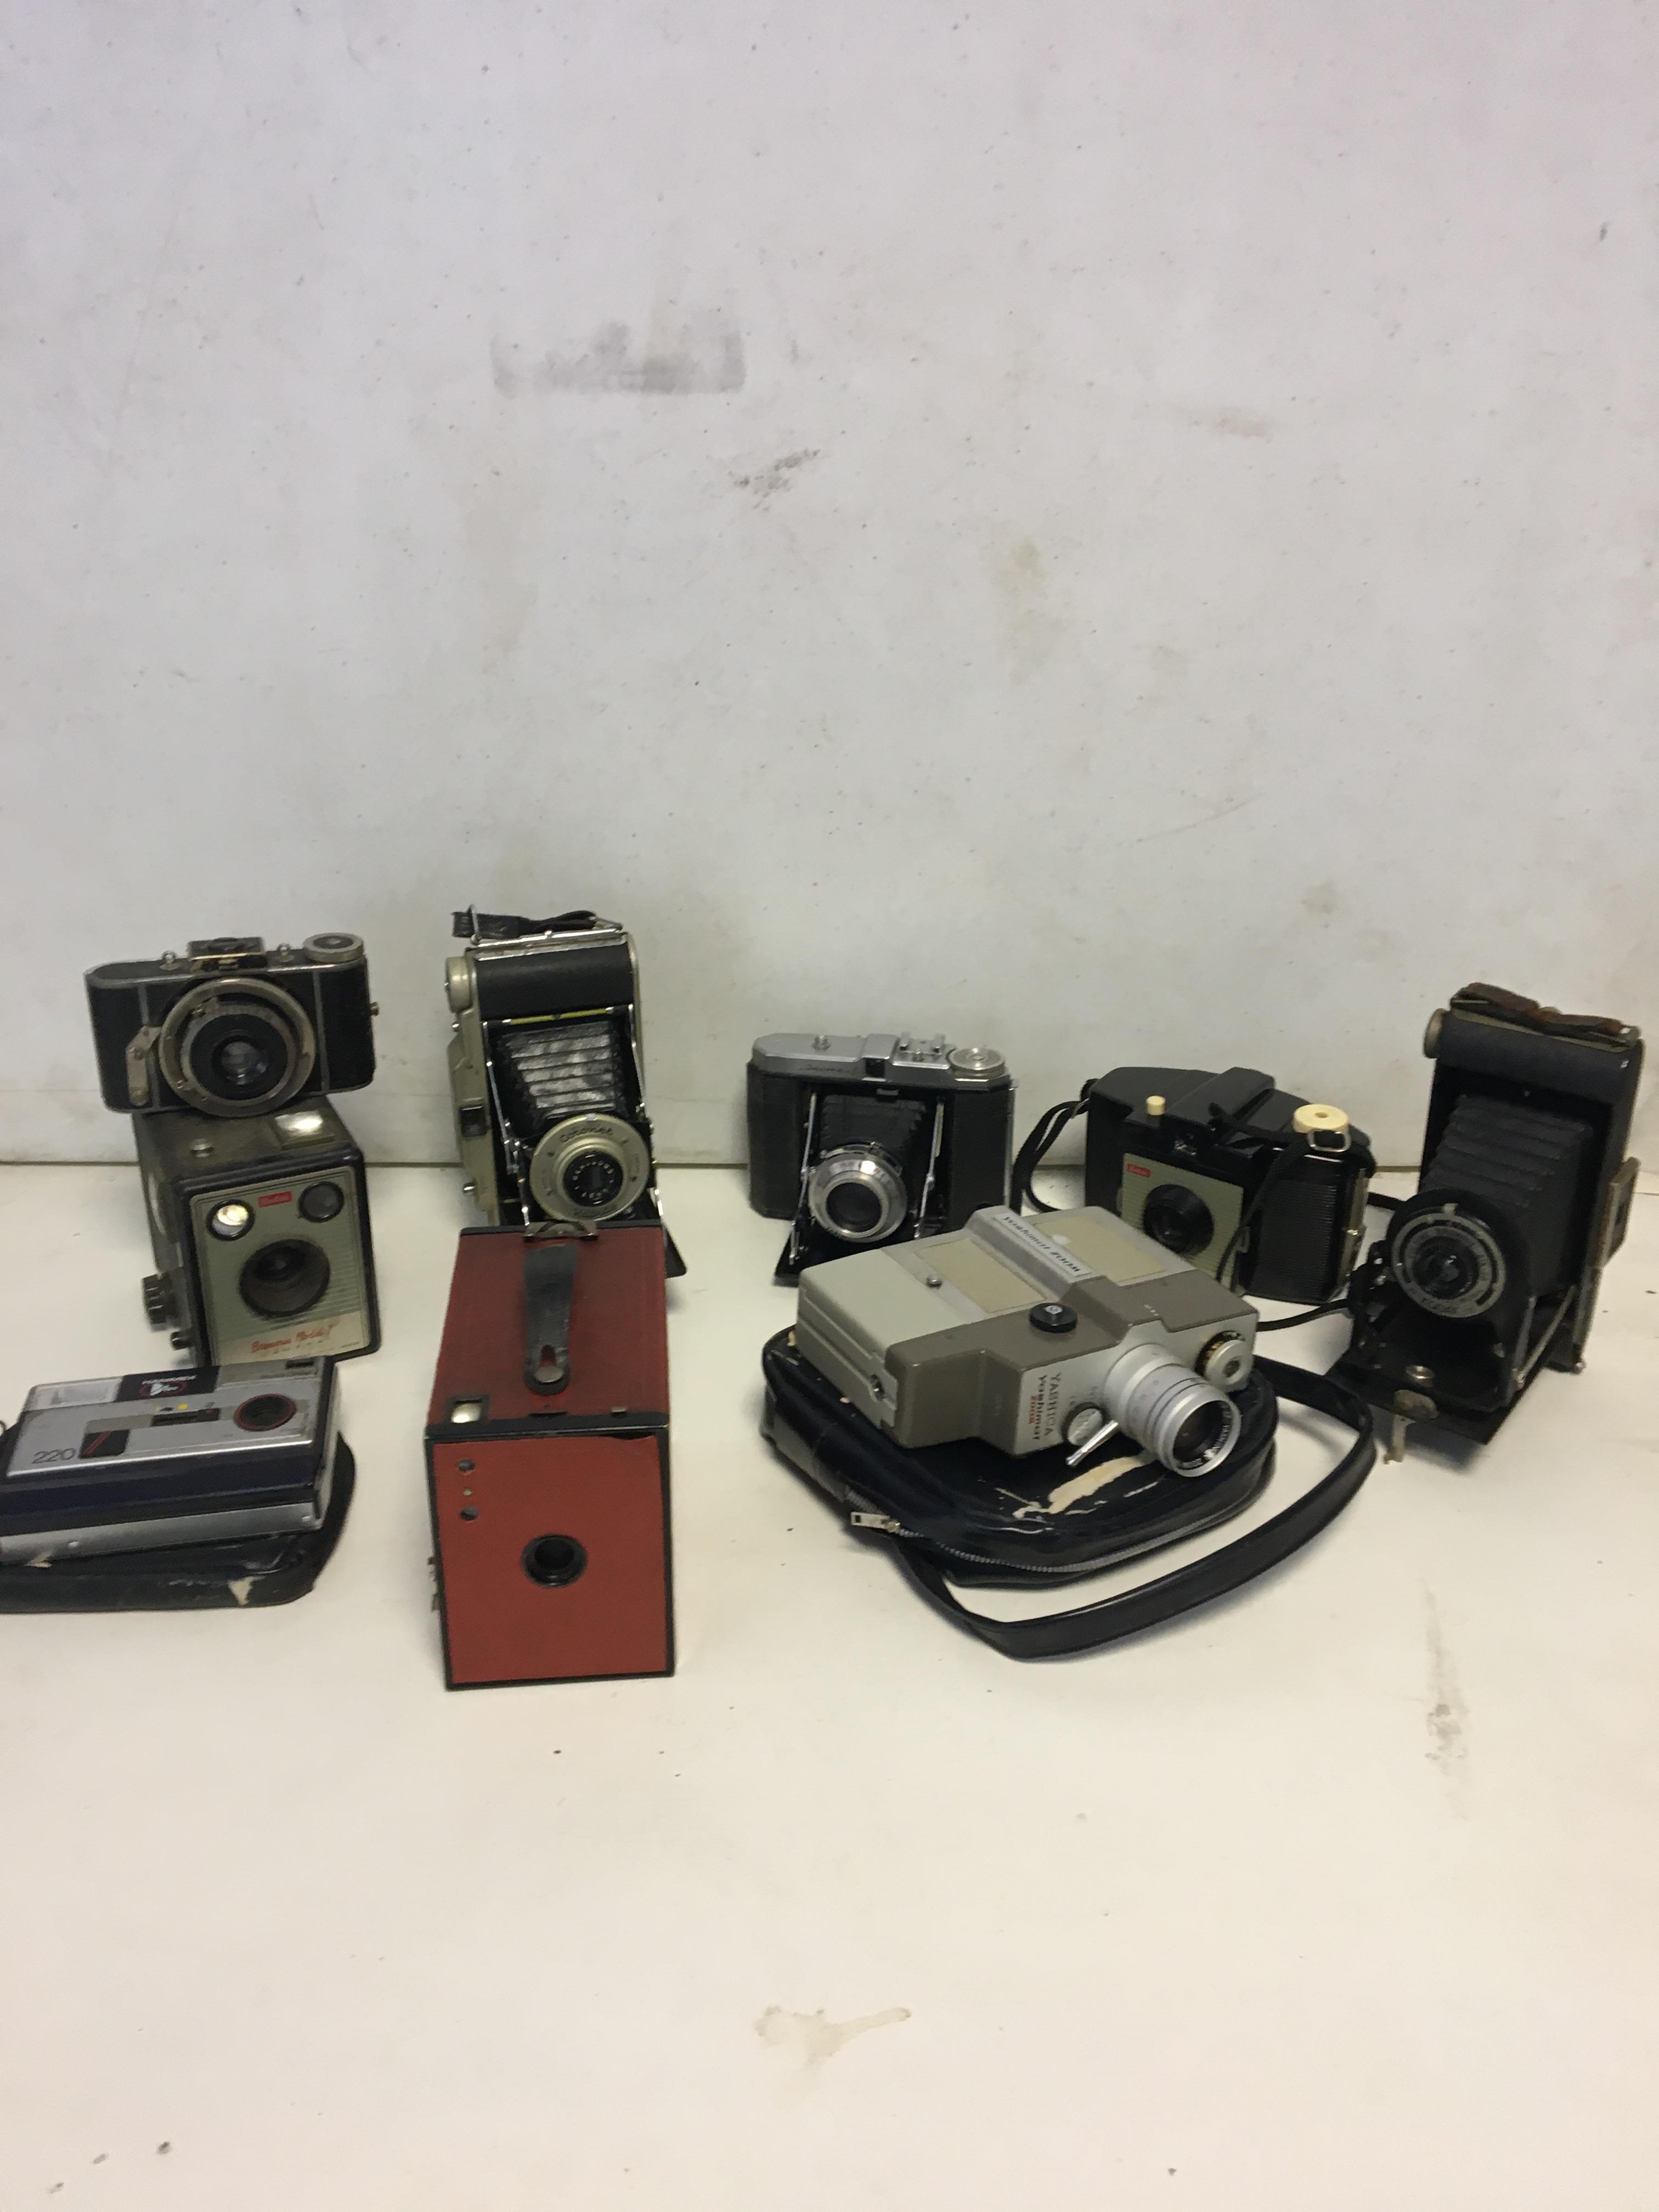 Vintage cameras to include Pentacon 6